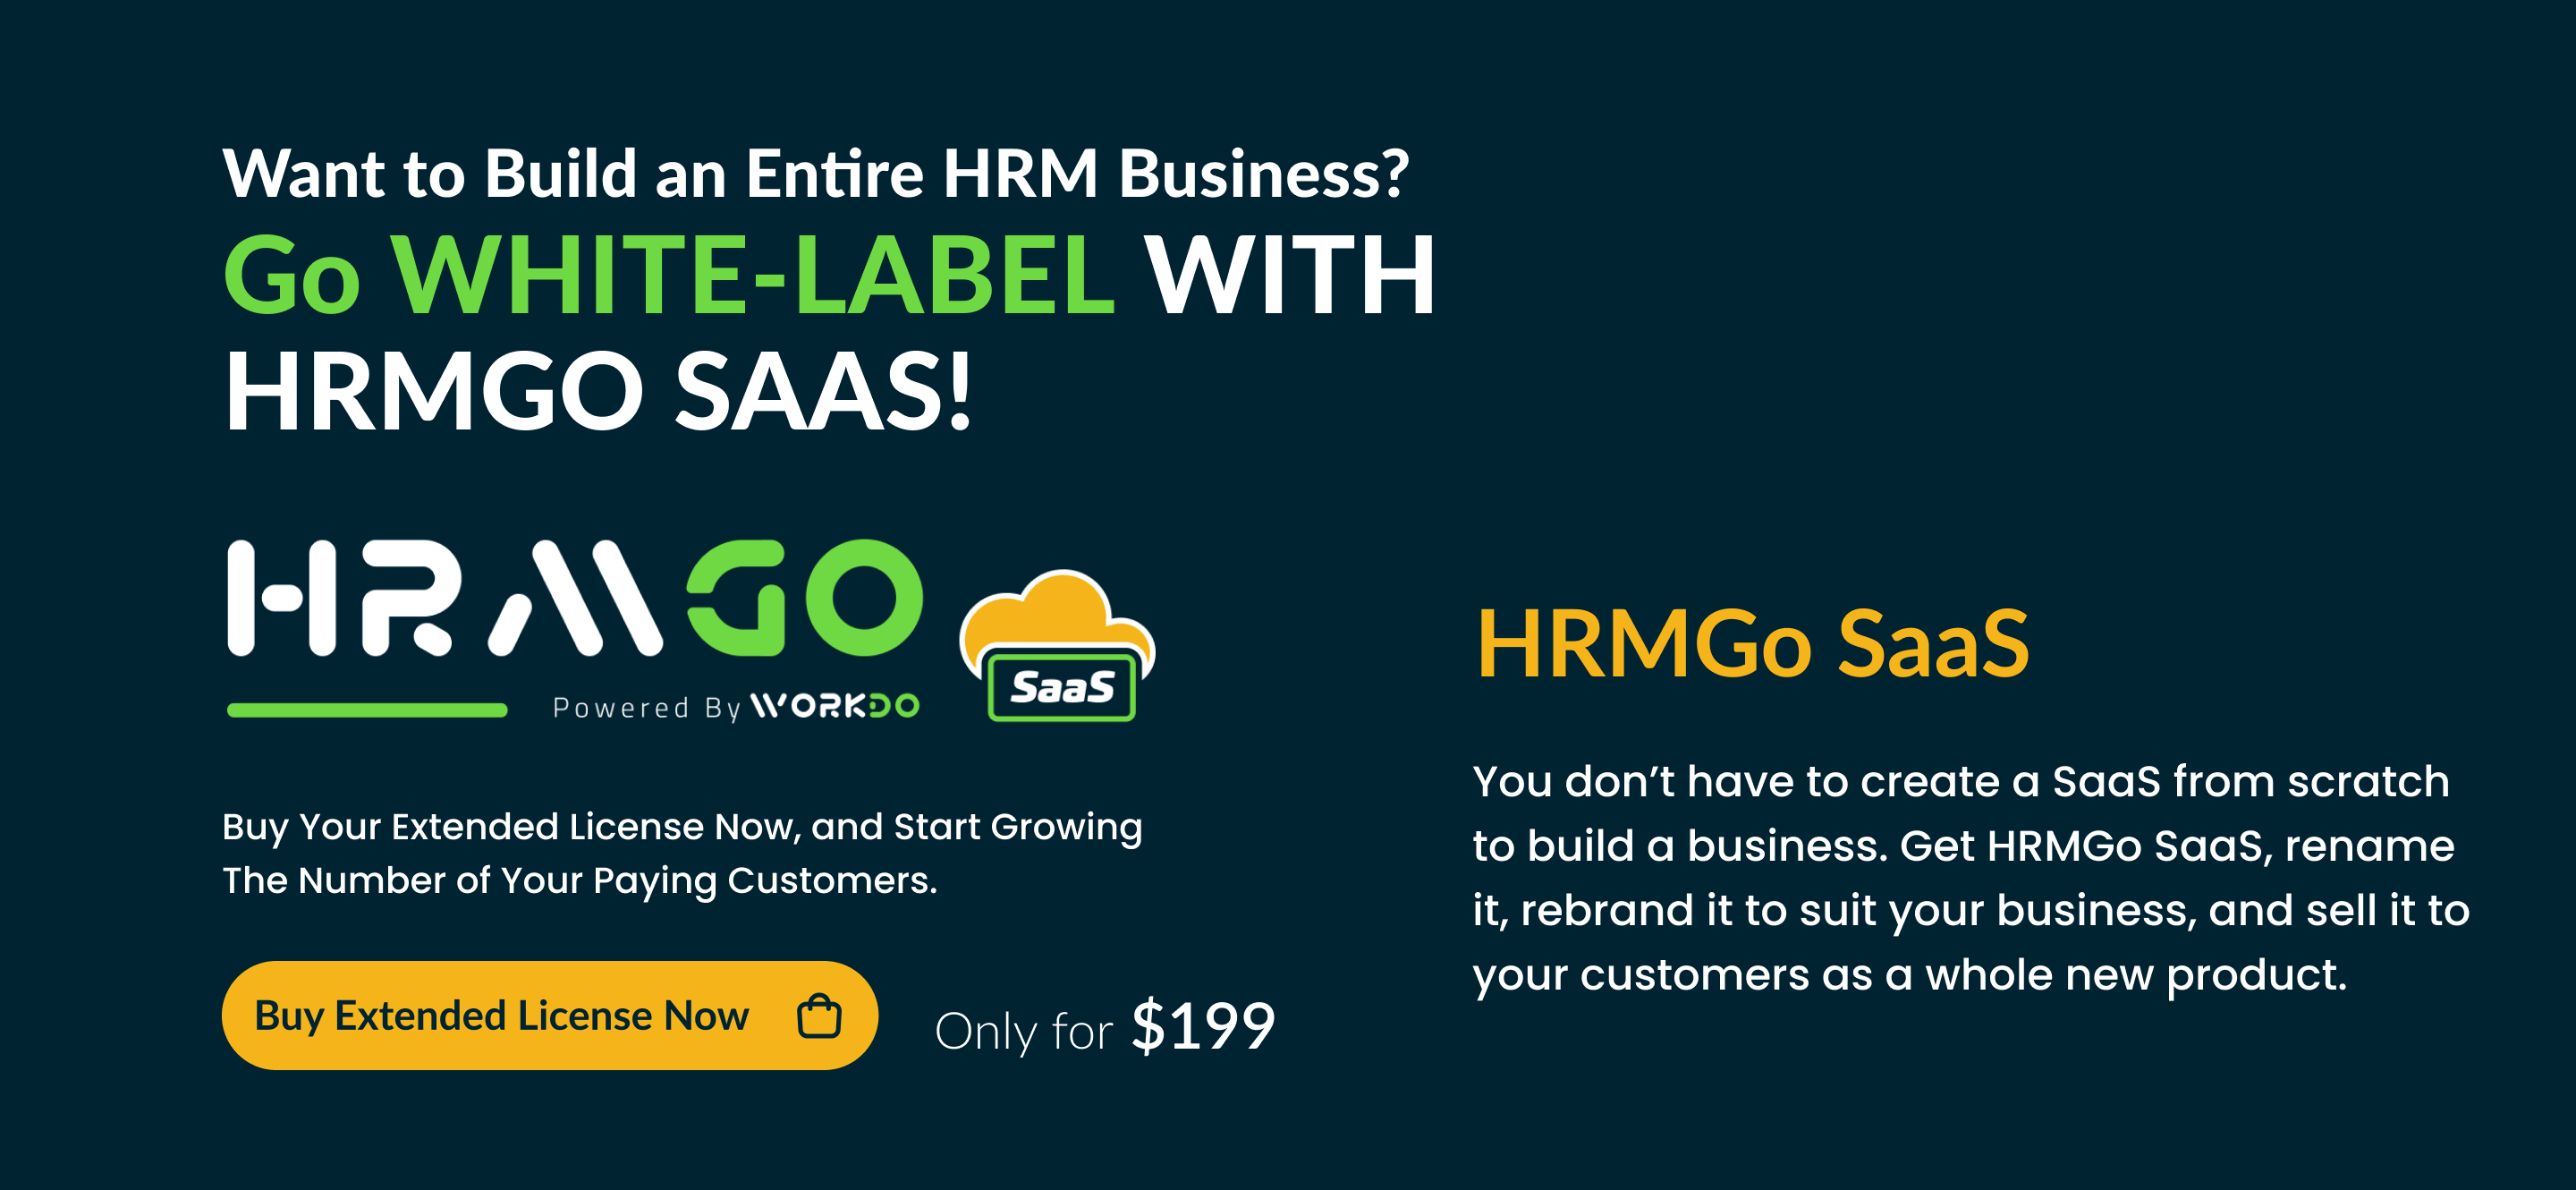 HRMGo SaaS - HRM and Payroll Tool - 10